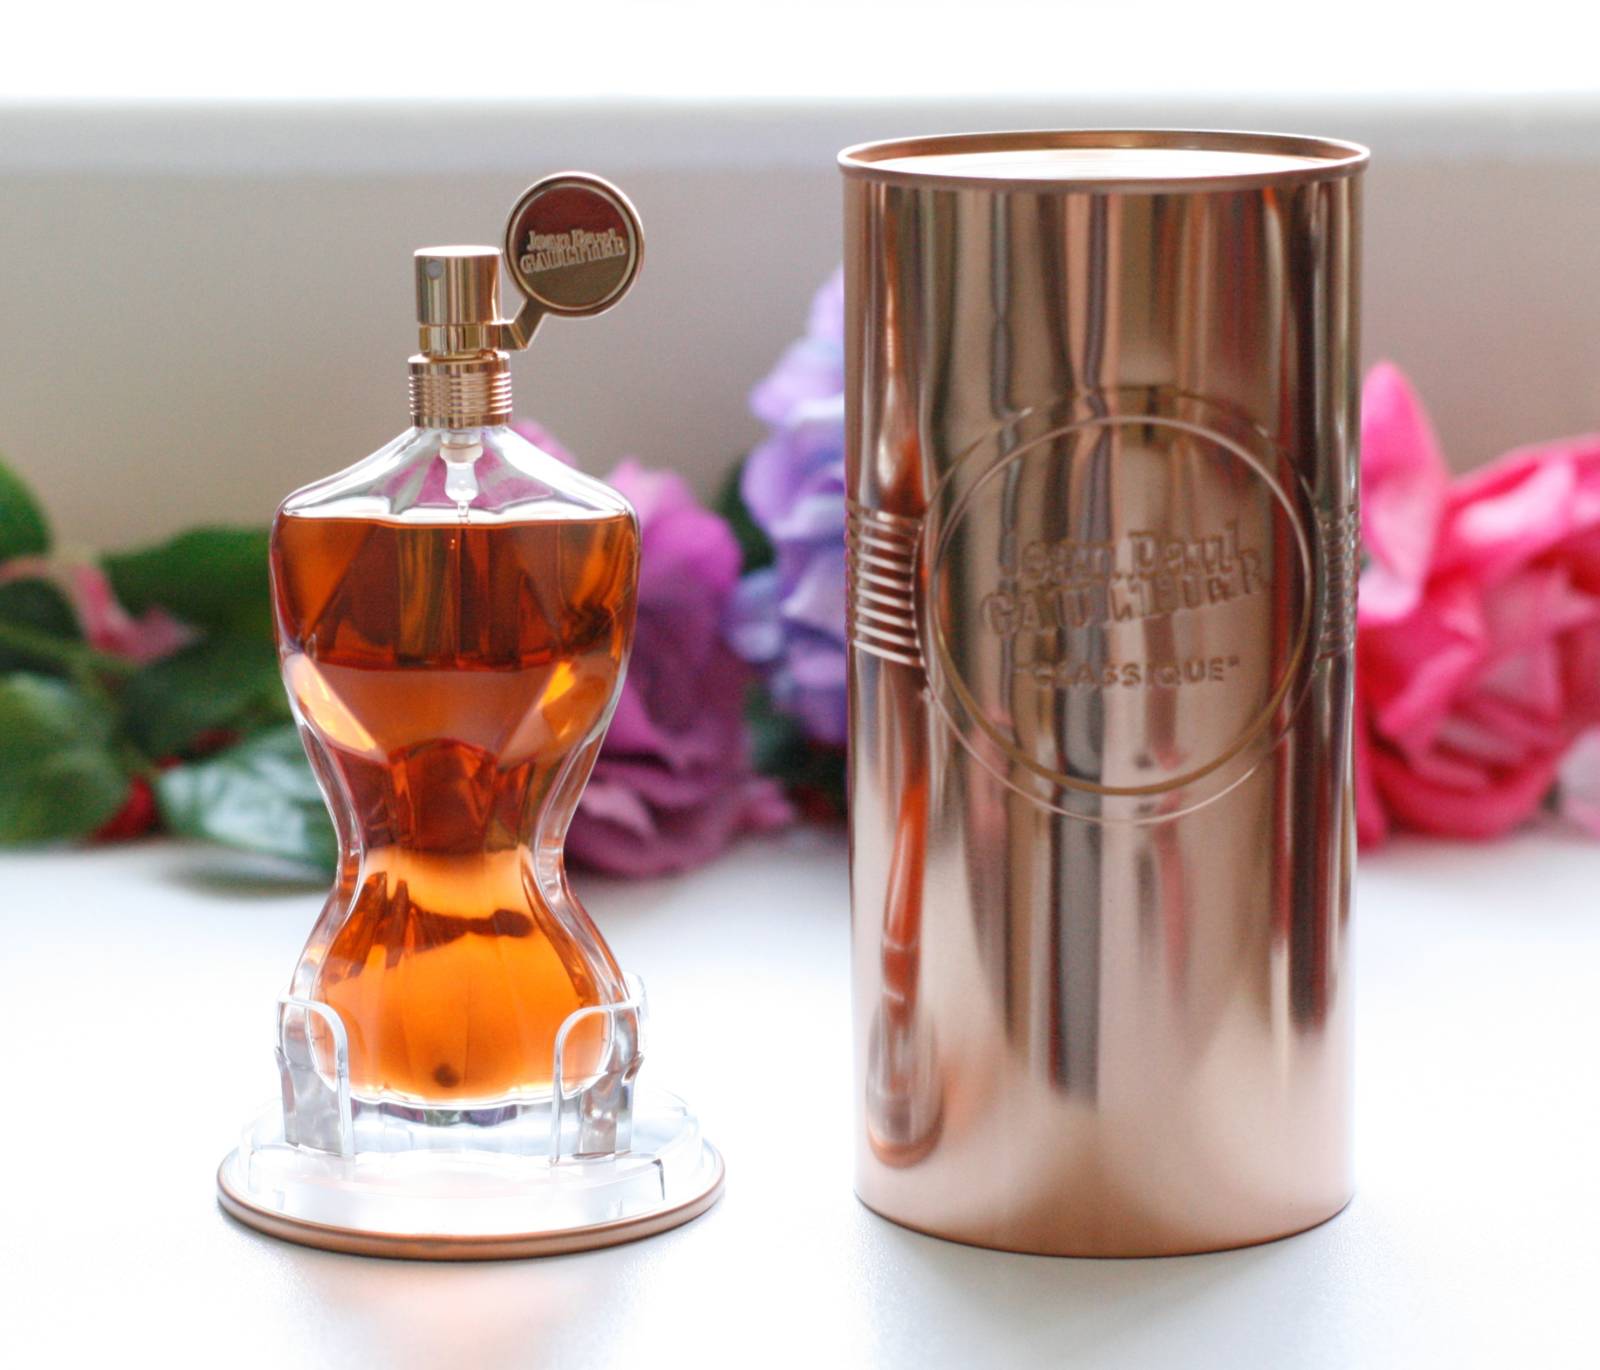 Jean Paul Gaultier Classique Essence De Parfum Review | atelier-yuwa ...